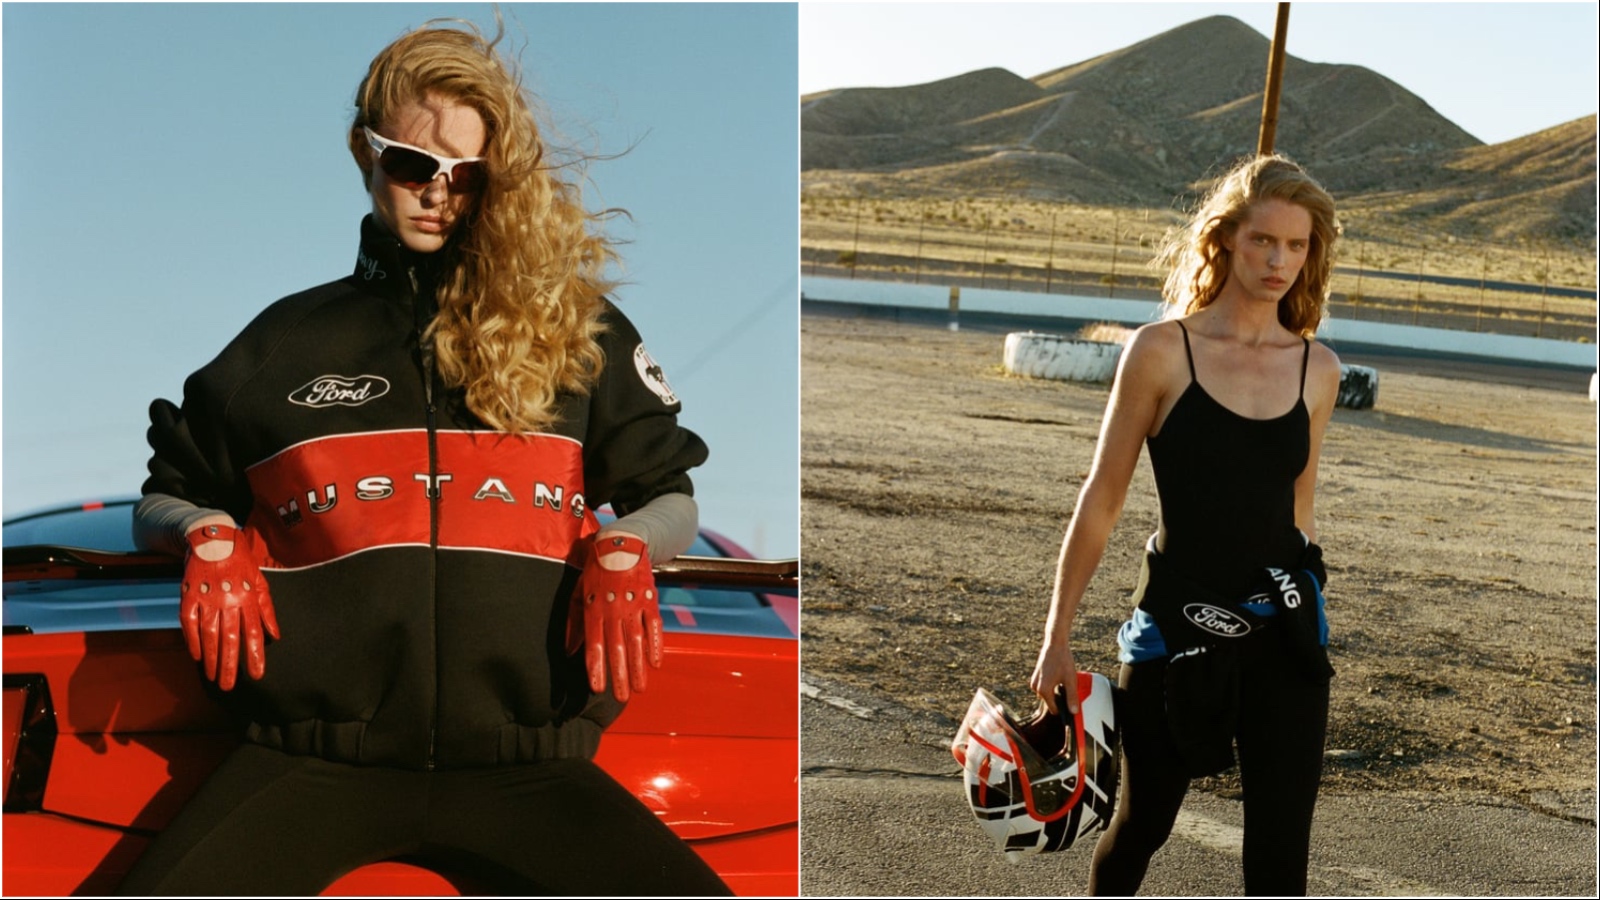 U duhu trkačke sezone predstavljamo Zara x Ford Mustang kolaboraciju naših snova